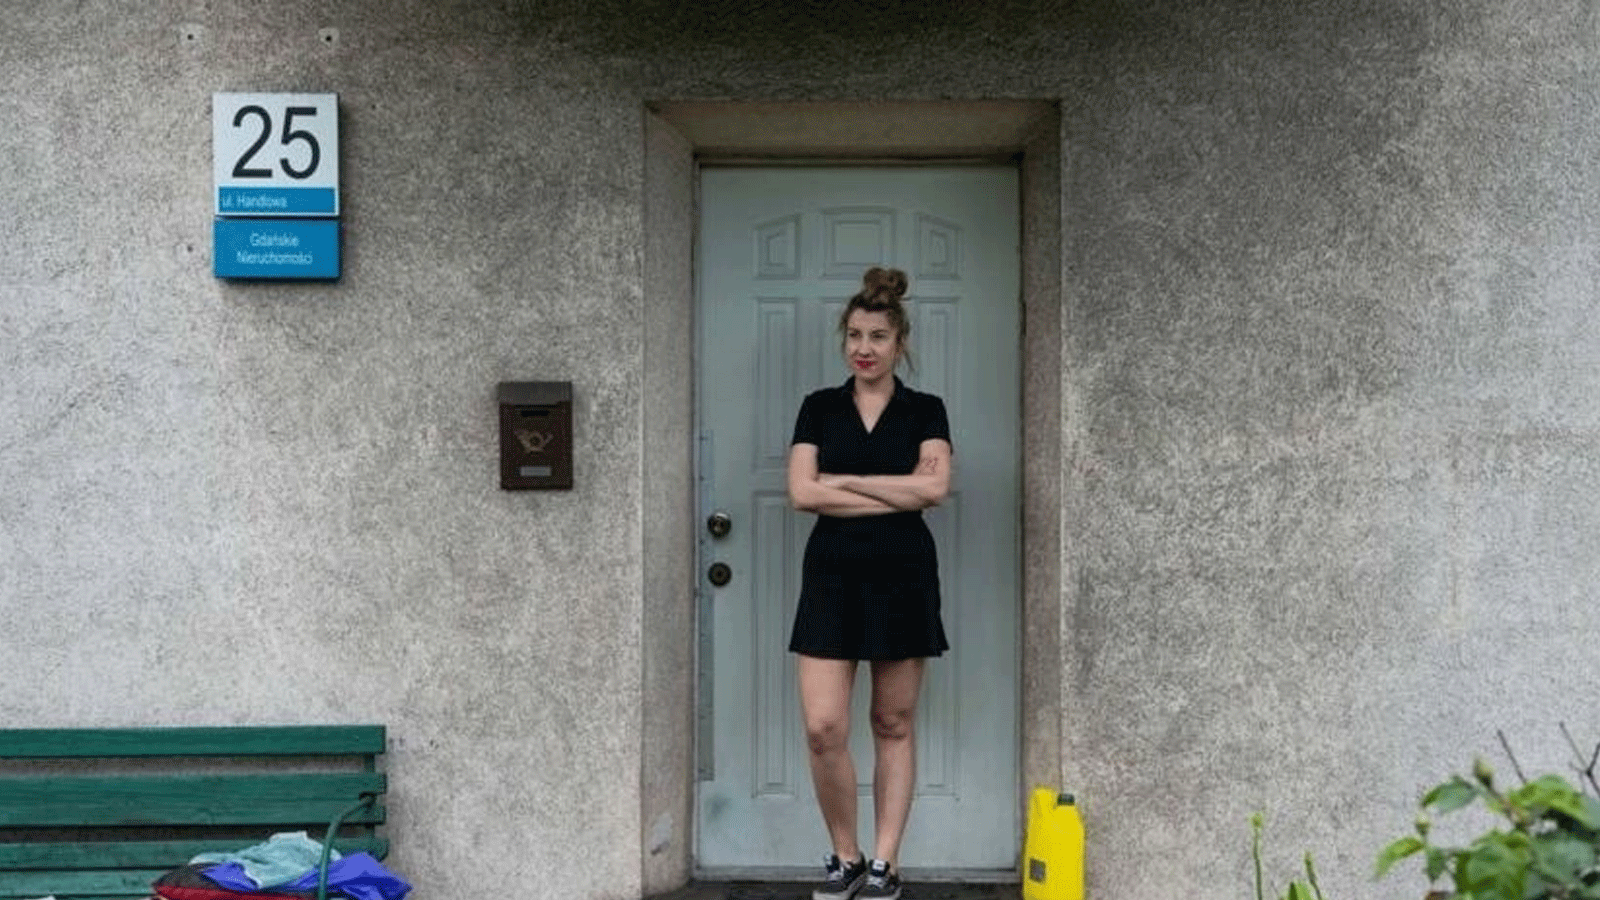 إيفونا فوجنيفسكا(Iwona Wozniewska) تقف أمام باب منزلها في غدانسك، بولندا. ويبدو غبار الفحم على جدران منزلها